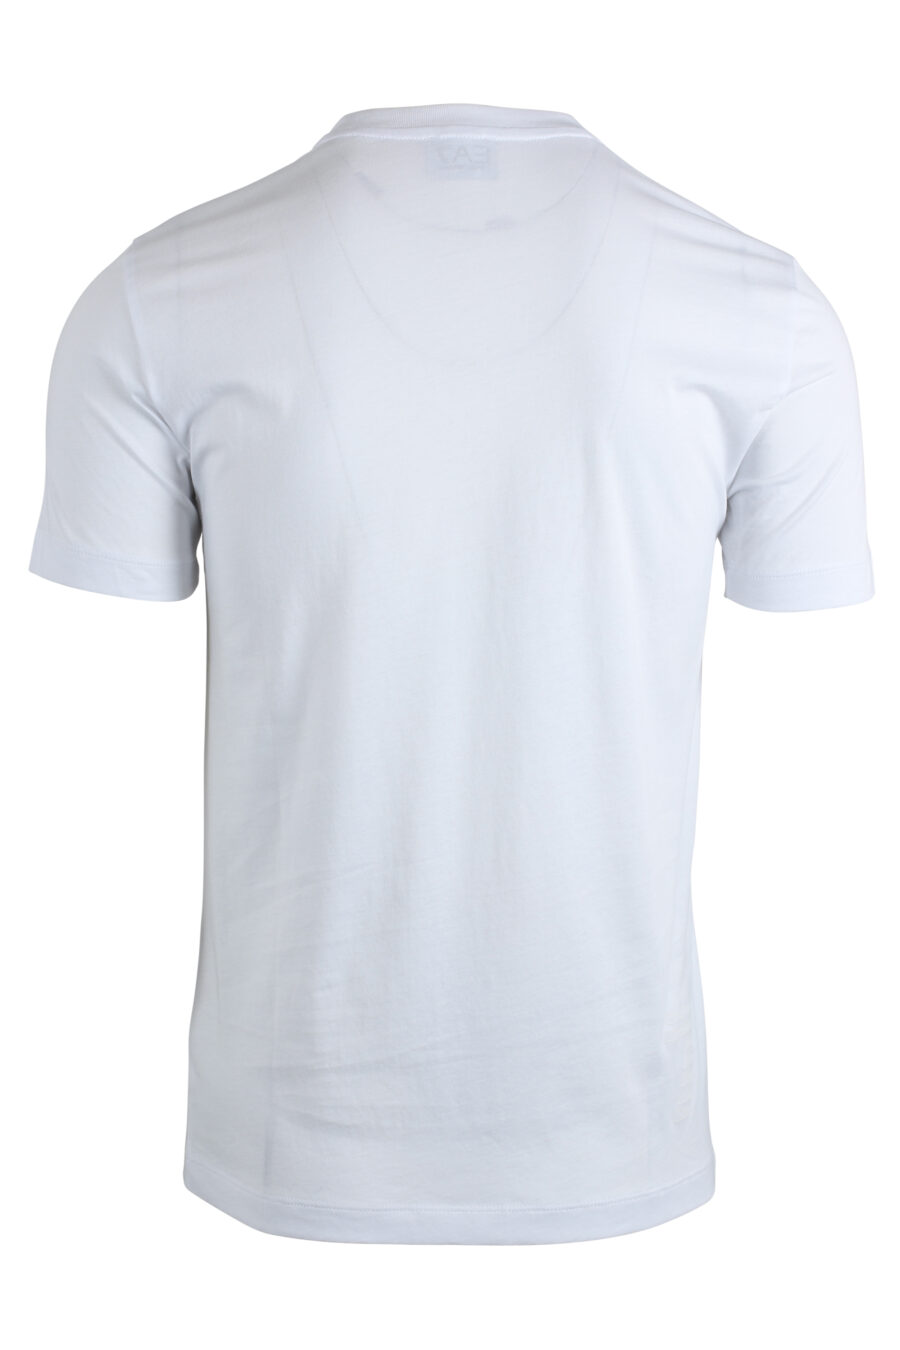 Camiseta blanca con maxilogo plateado de goma - IMG 4792